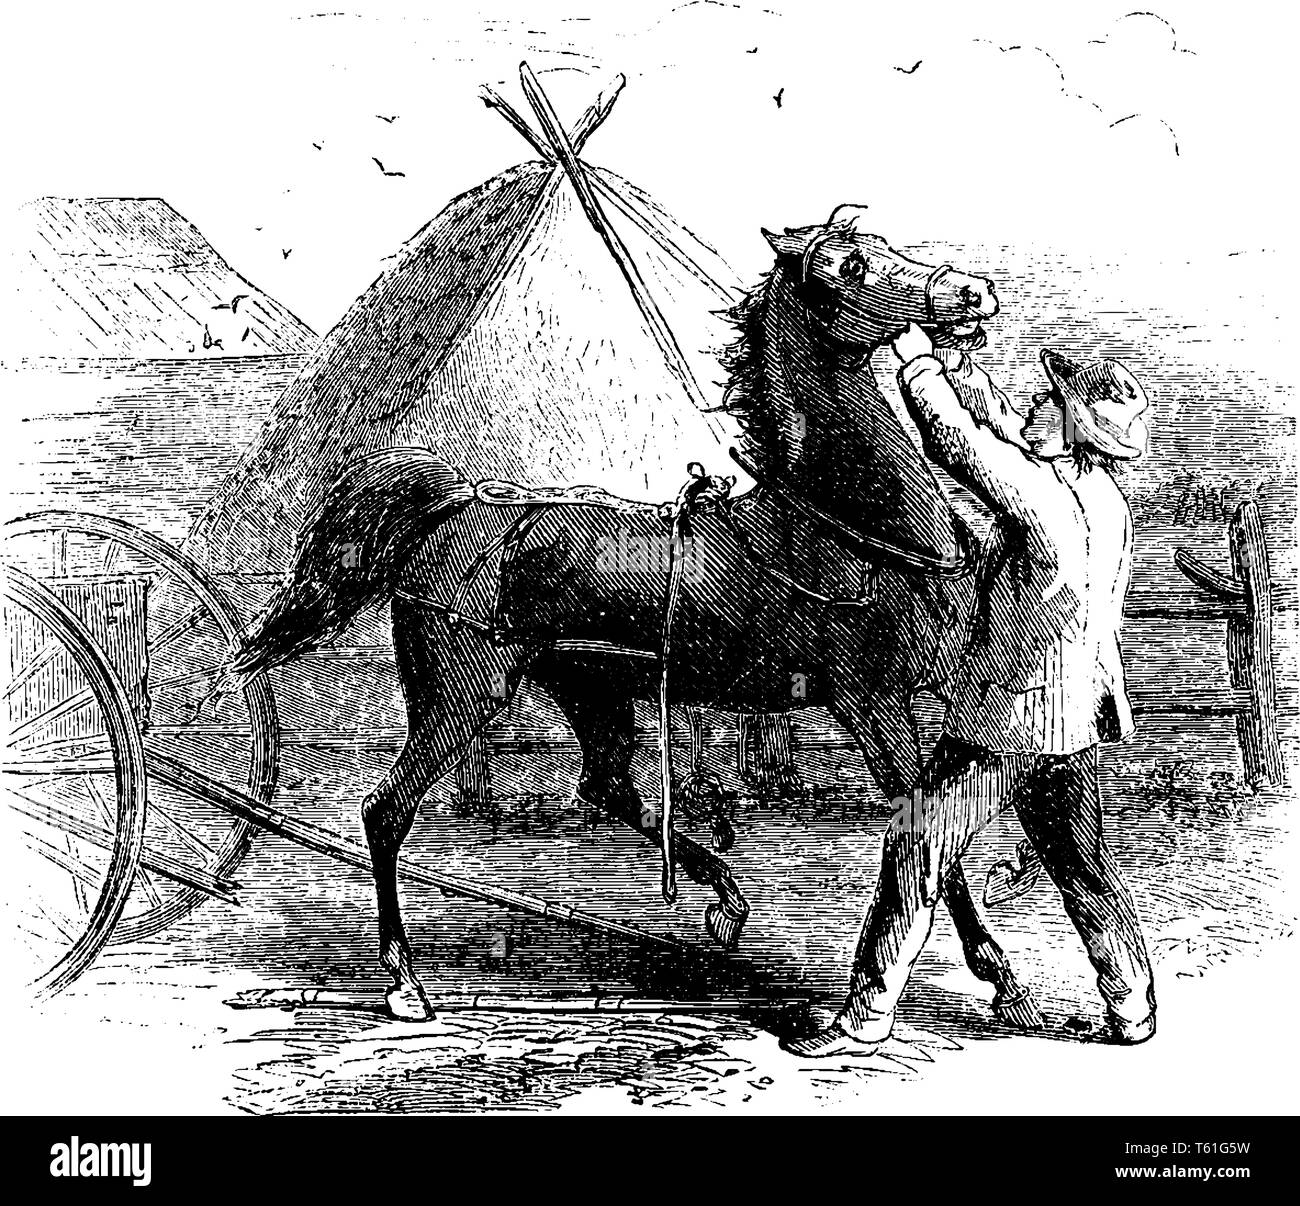 Un uomo mettendo briglia su un cavallo, tenda in background, vintage disegno della linea di incisione o illustrazione Illustrazione Vettoriale